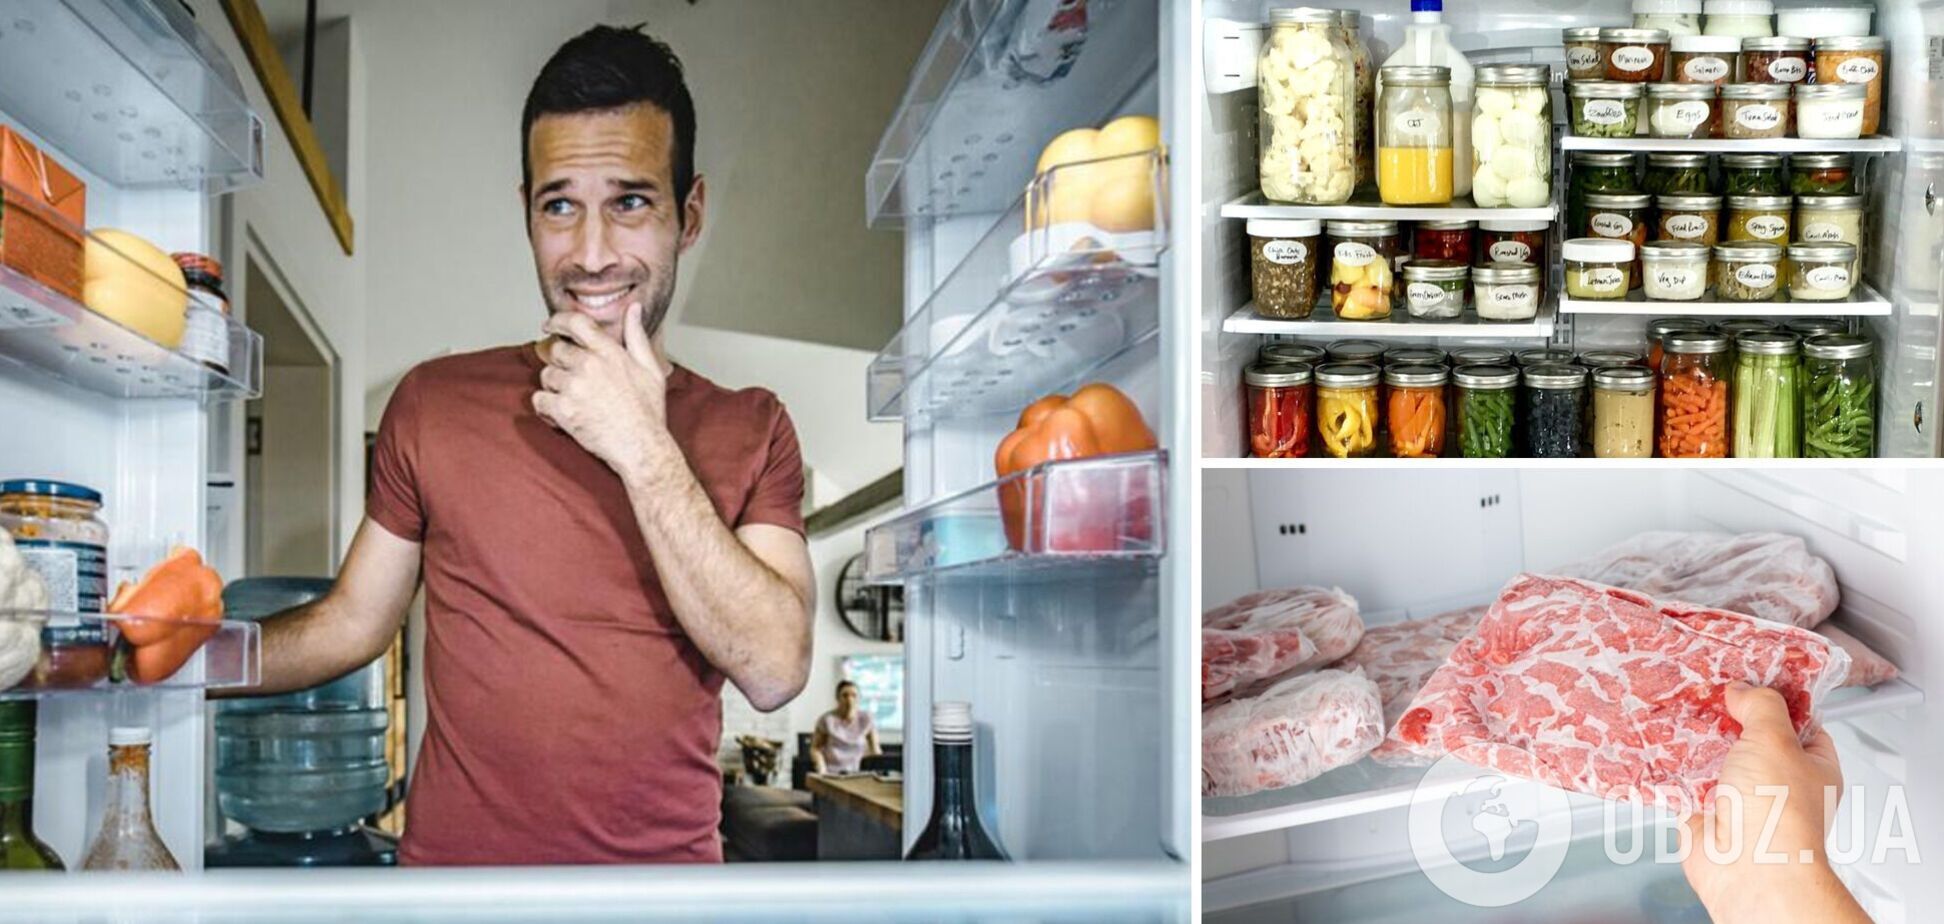 Холодильник без світла: які продукти варто викинути, а які – зберегти після блекауту